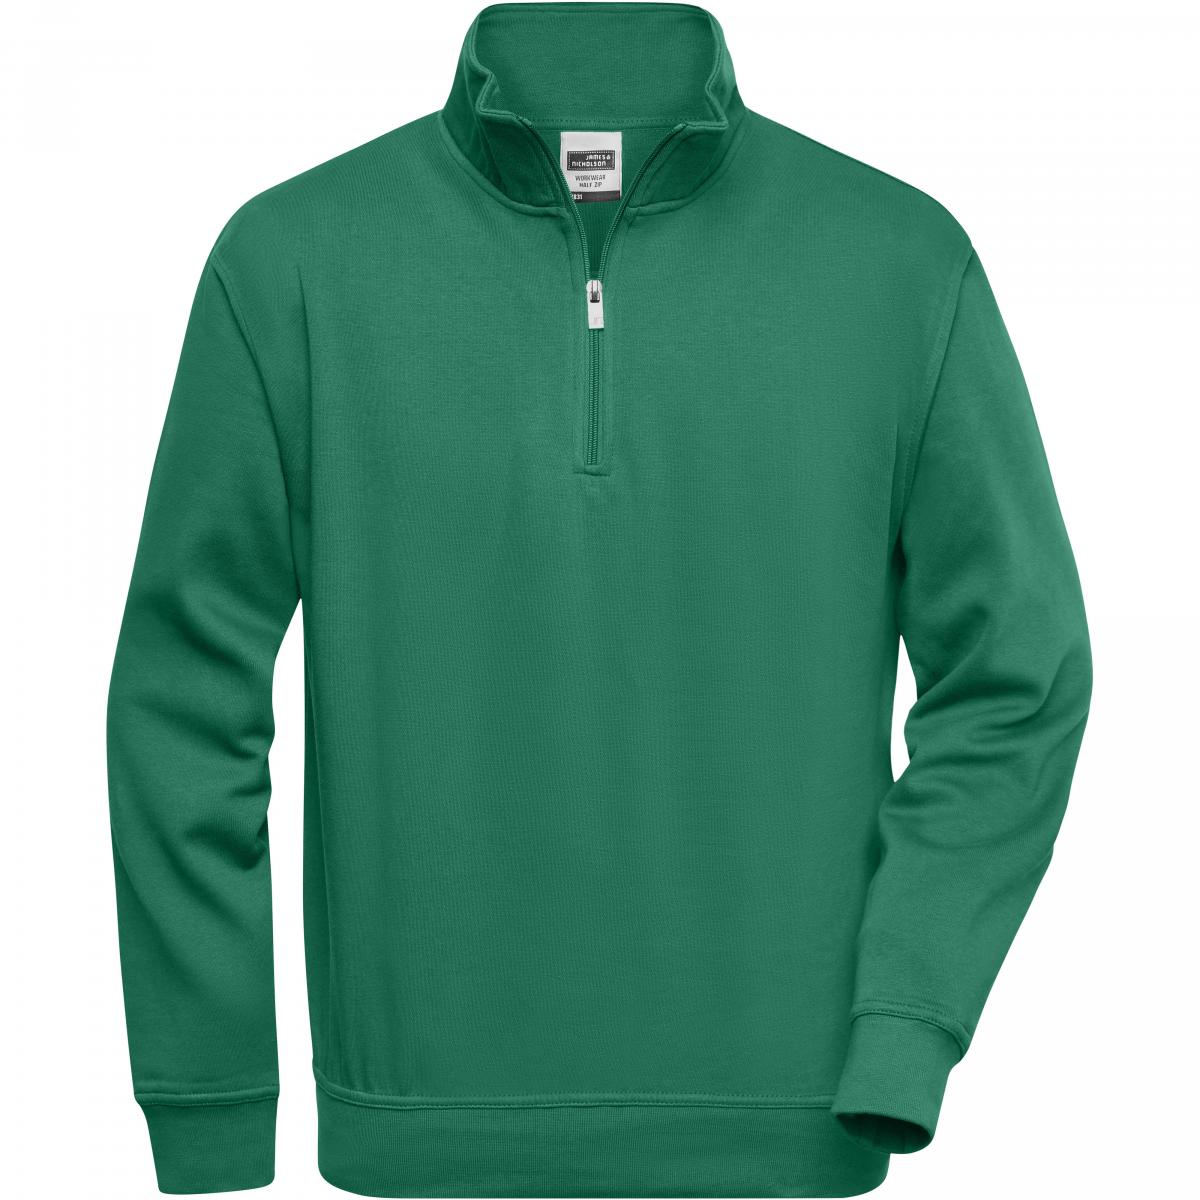 Hersteller: James+Nicholson Herstellernummer: JN831 Artikelbezeichnung: Workwear Half Zip Sweatshirt +Waschbar bis 60 °C Farbe: Dark Green